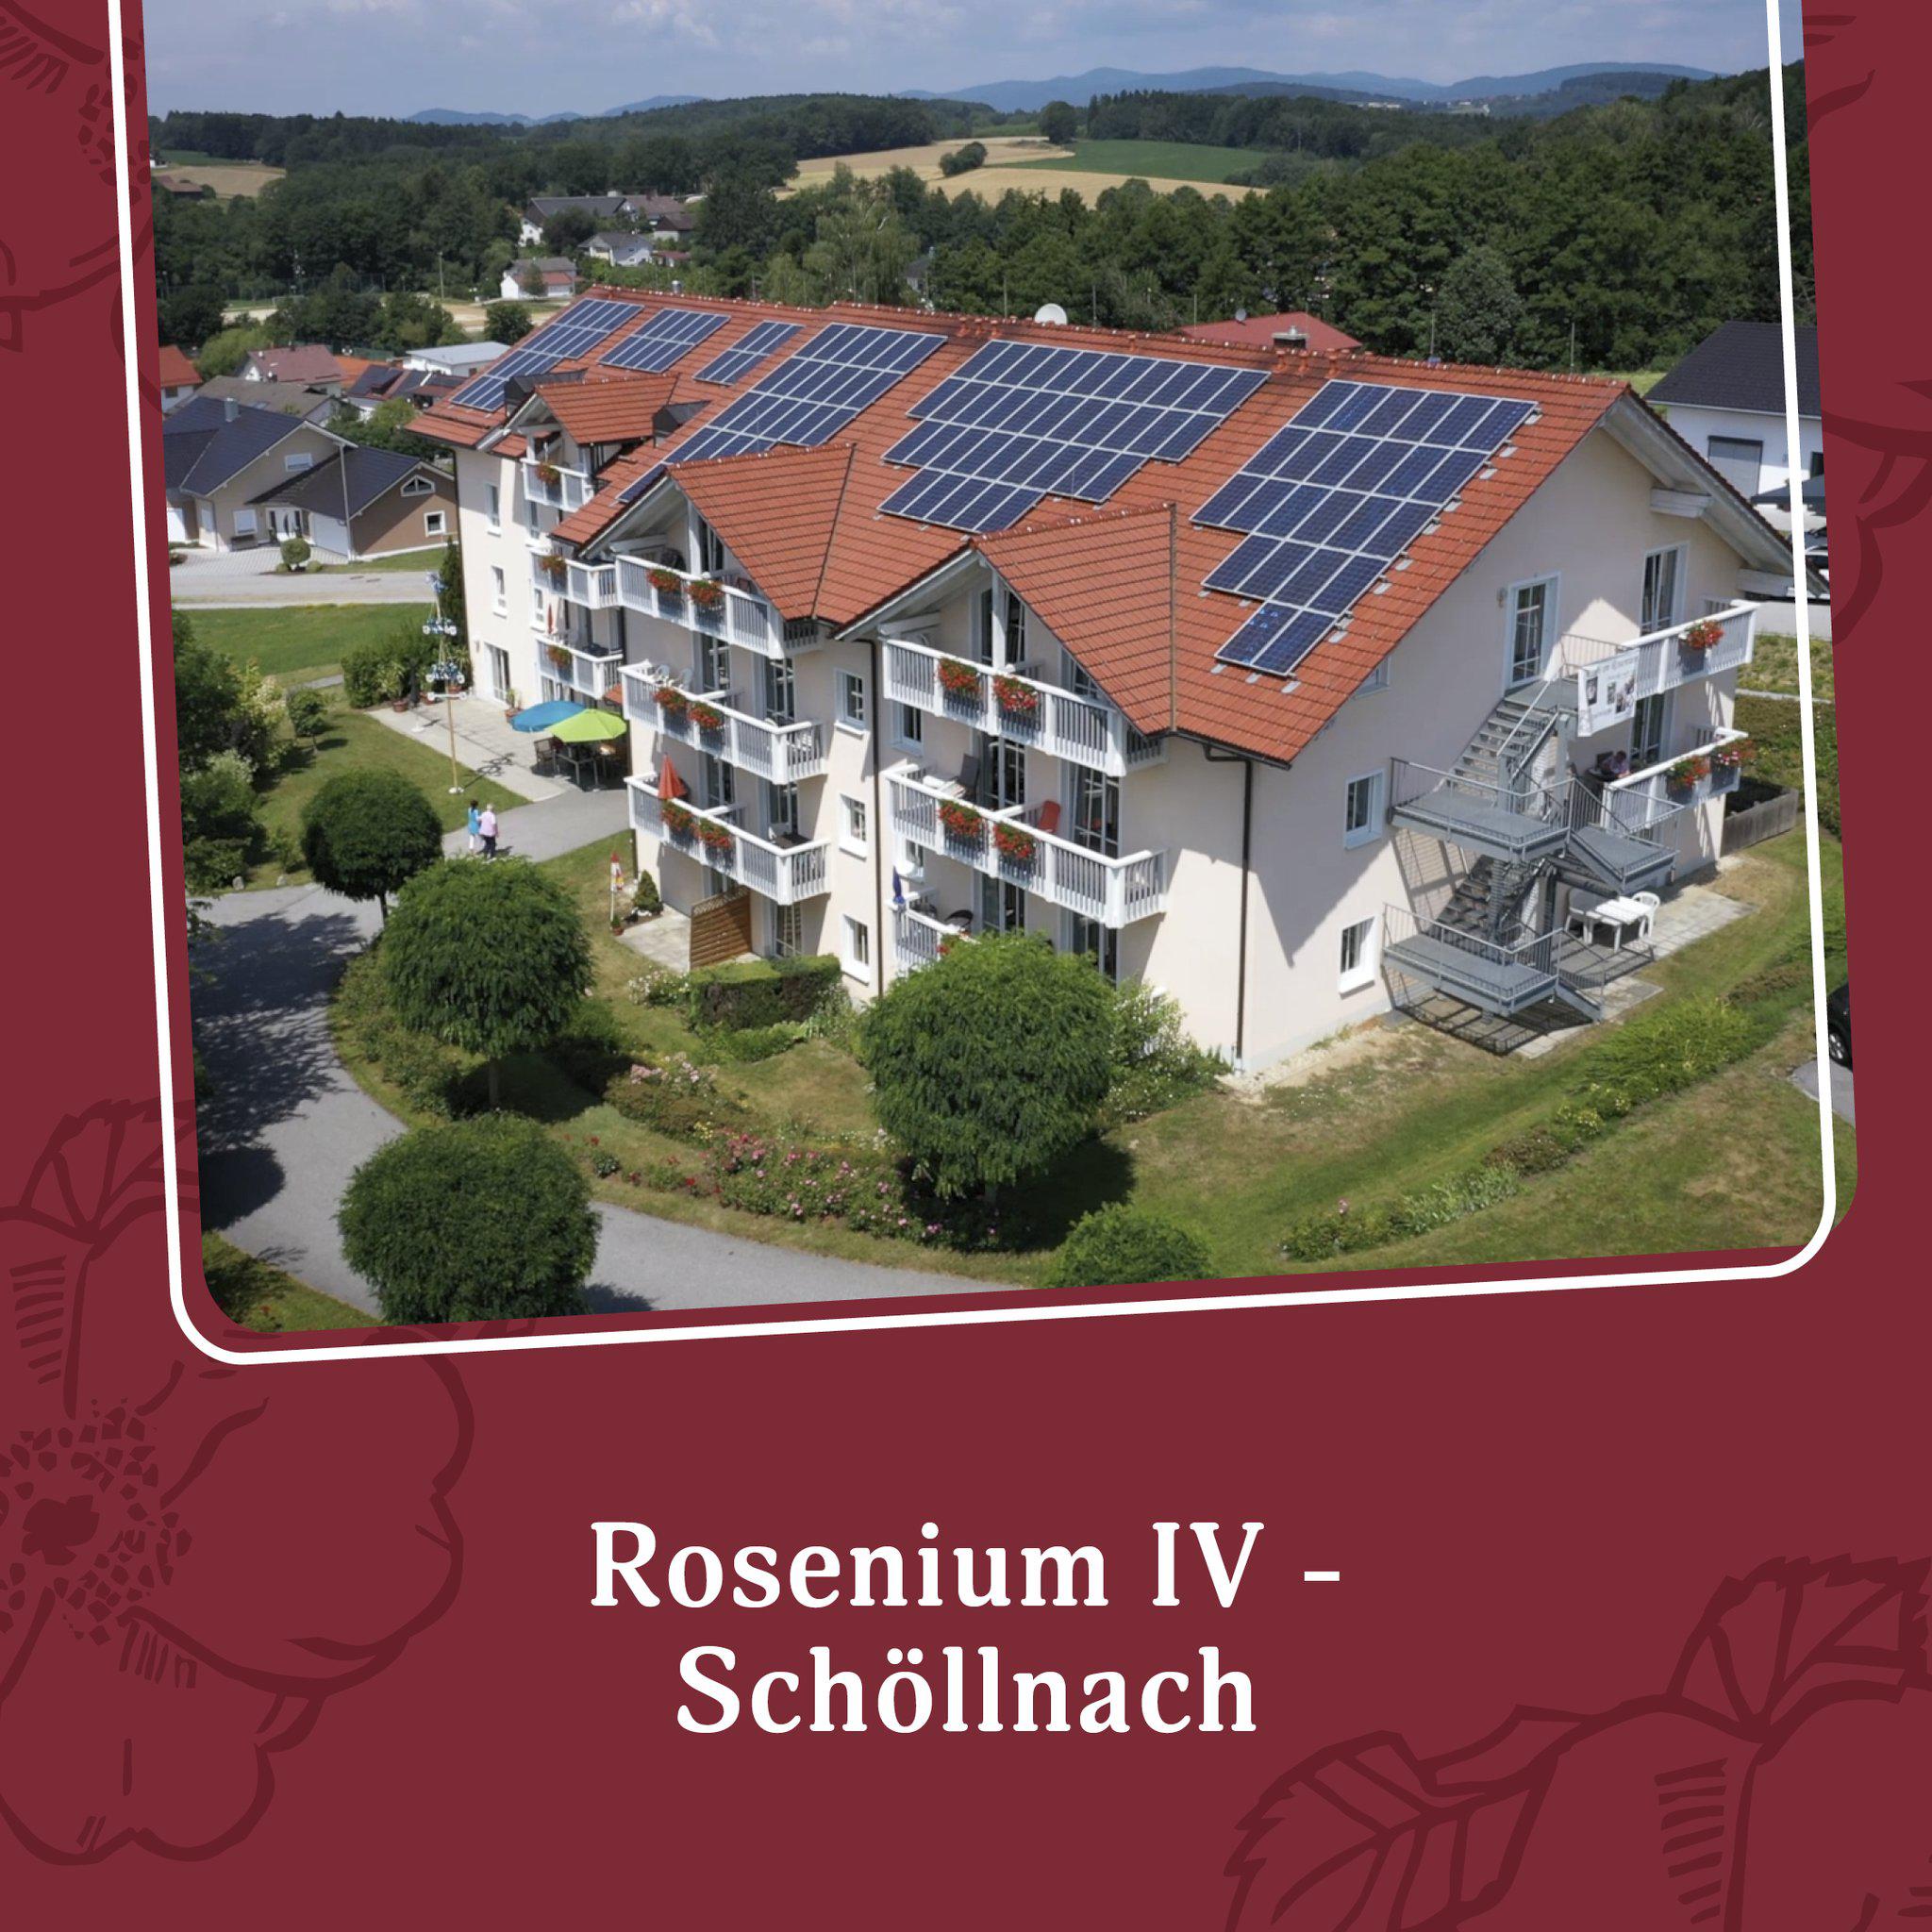 Rosenium Schöllnach, Schosserweg 6 in Schöllnach